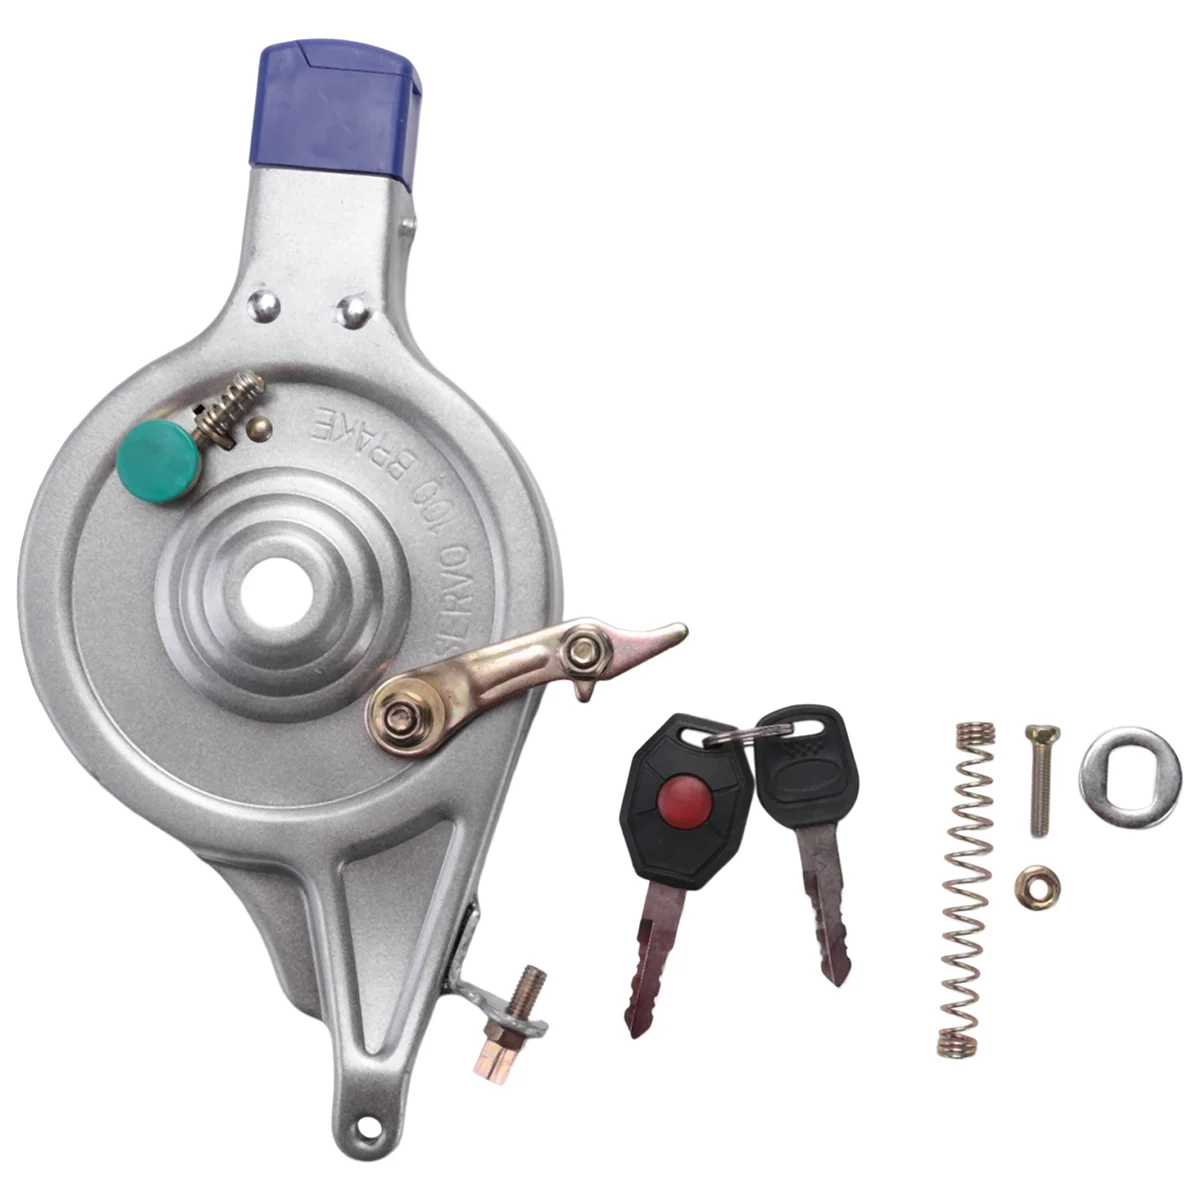 

Задний барабанный тормоз для электровелосипеда, тип 100, тормоз для подъема задних колес электровелосипеда с замком, тормоз для подъема электровелосипеда